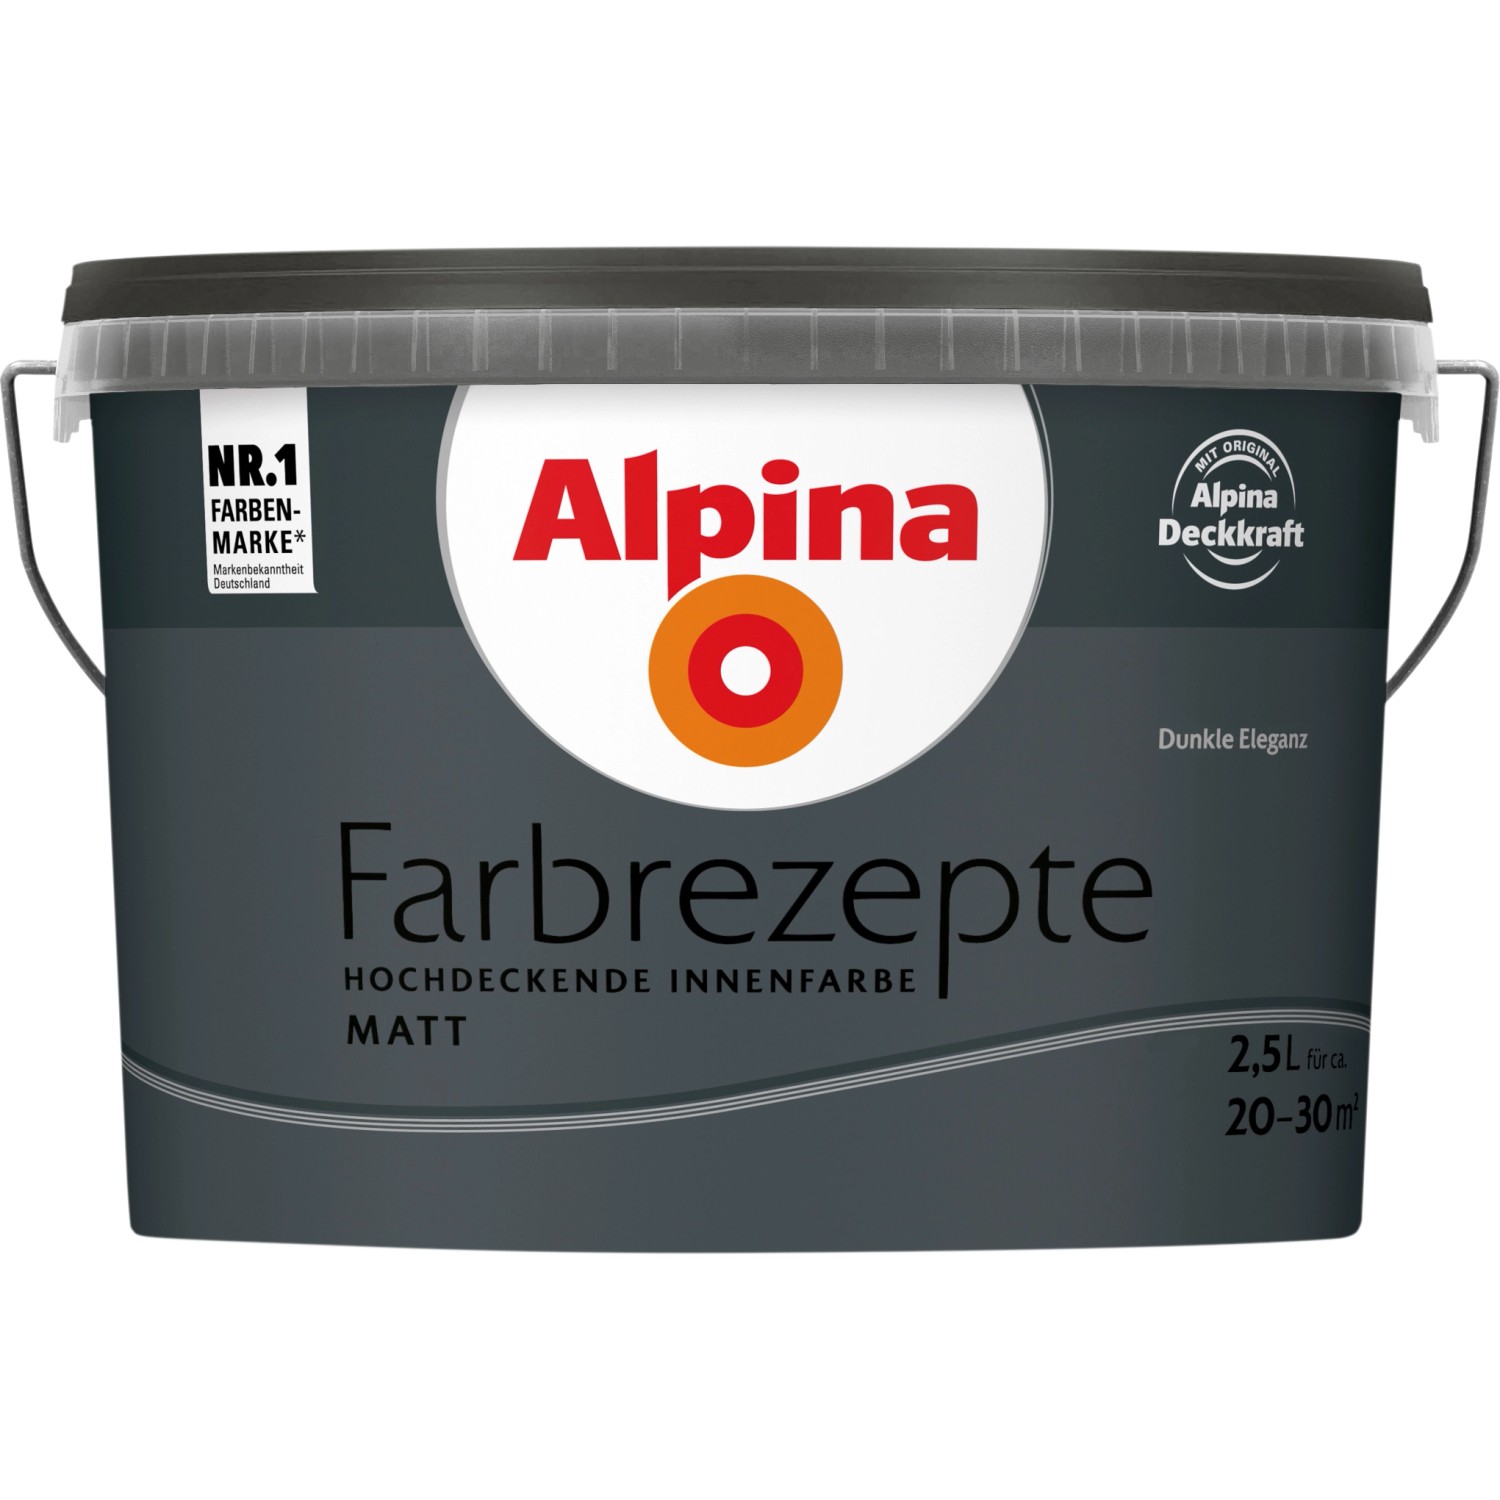 Alpina Farbrezepte Dunkle Eleganz matt 2,5 Liter von Alpina